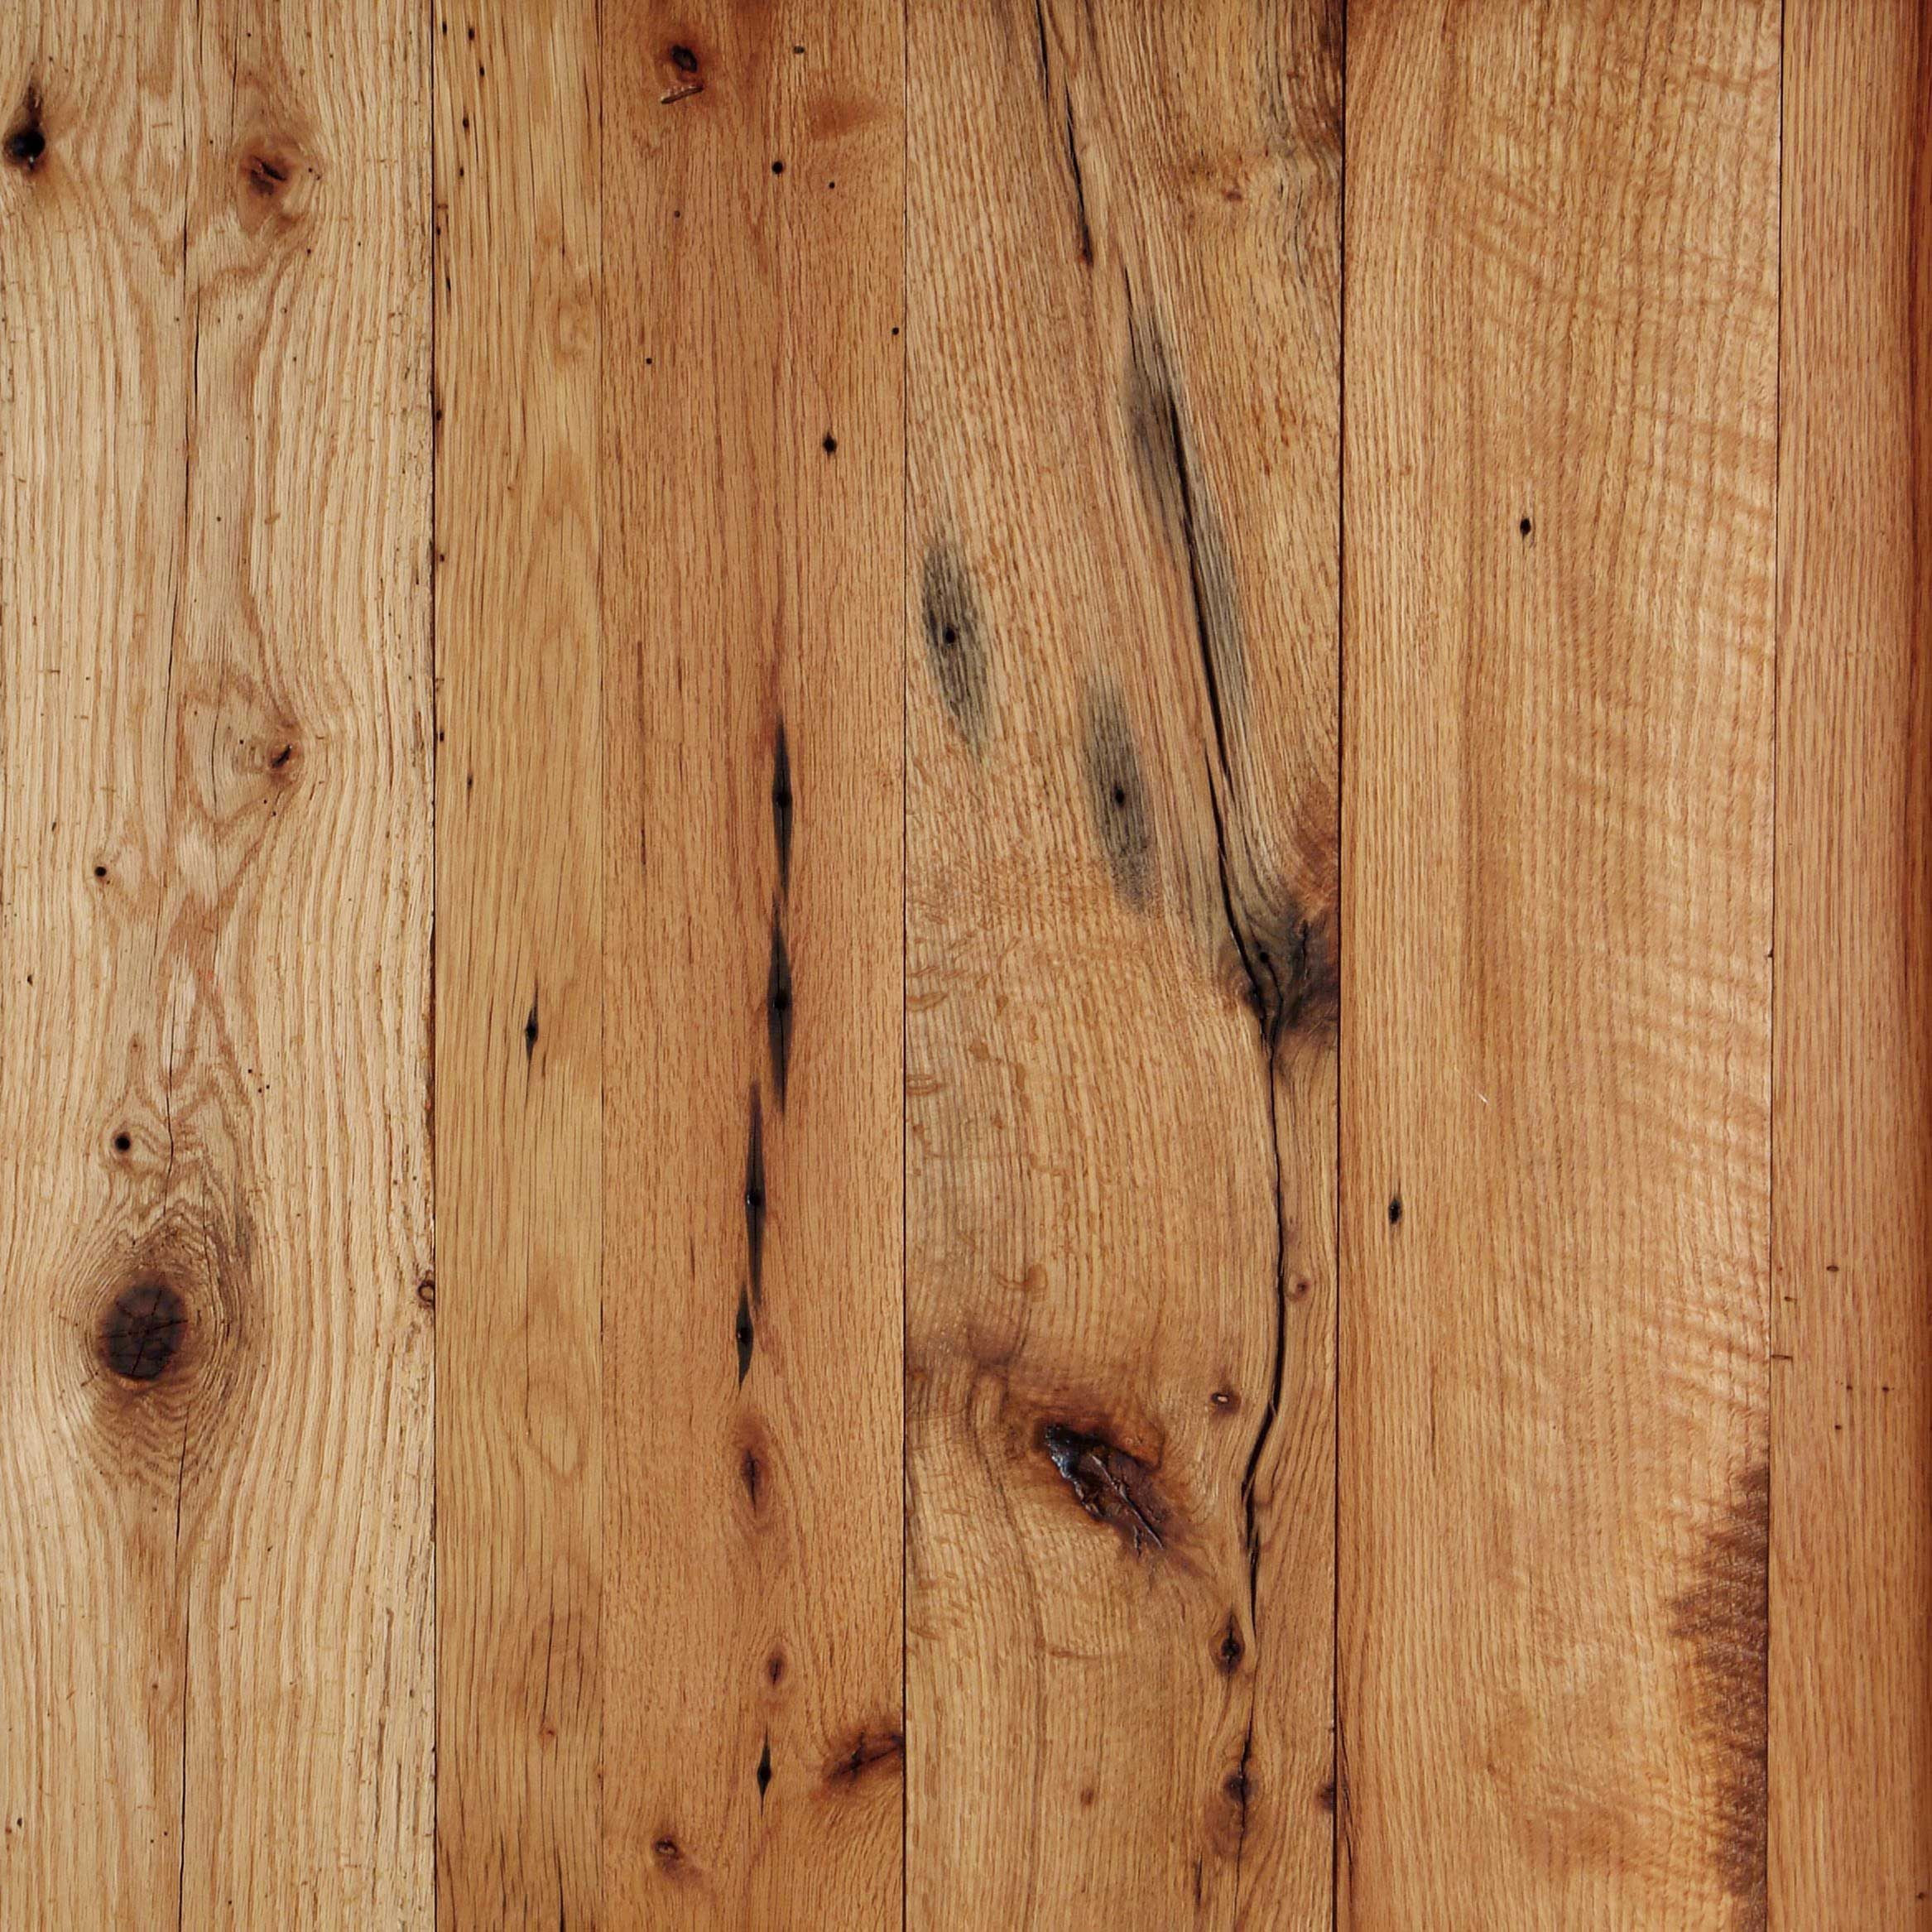 28 Famous 5 Red Oak Hardwood Flooring 2023 free download 5 red oak hardwood flooring of reclaimed salvaged antique red oak flooring wide boards knots throughout reclaimed salvaged antique red oak flooring wide boards knots